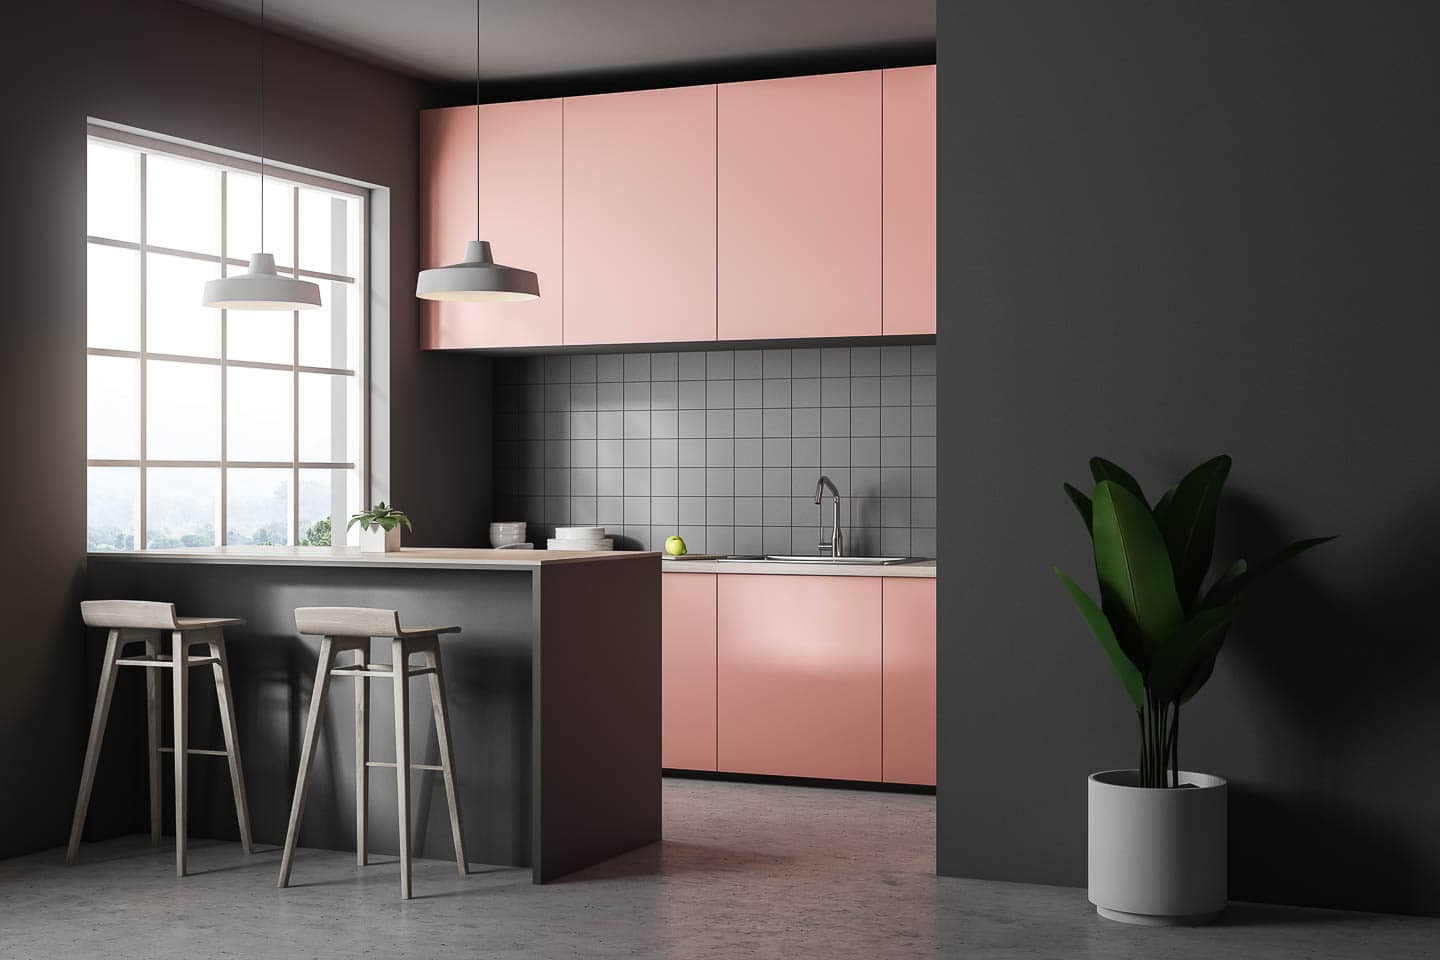 Modern kitchen with dark gray walls and backsplash, and medium pink kitchen cabinets